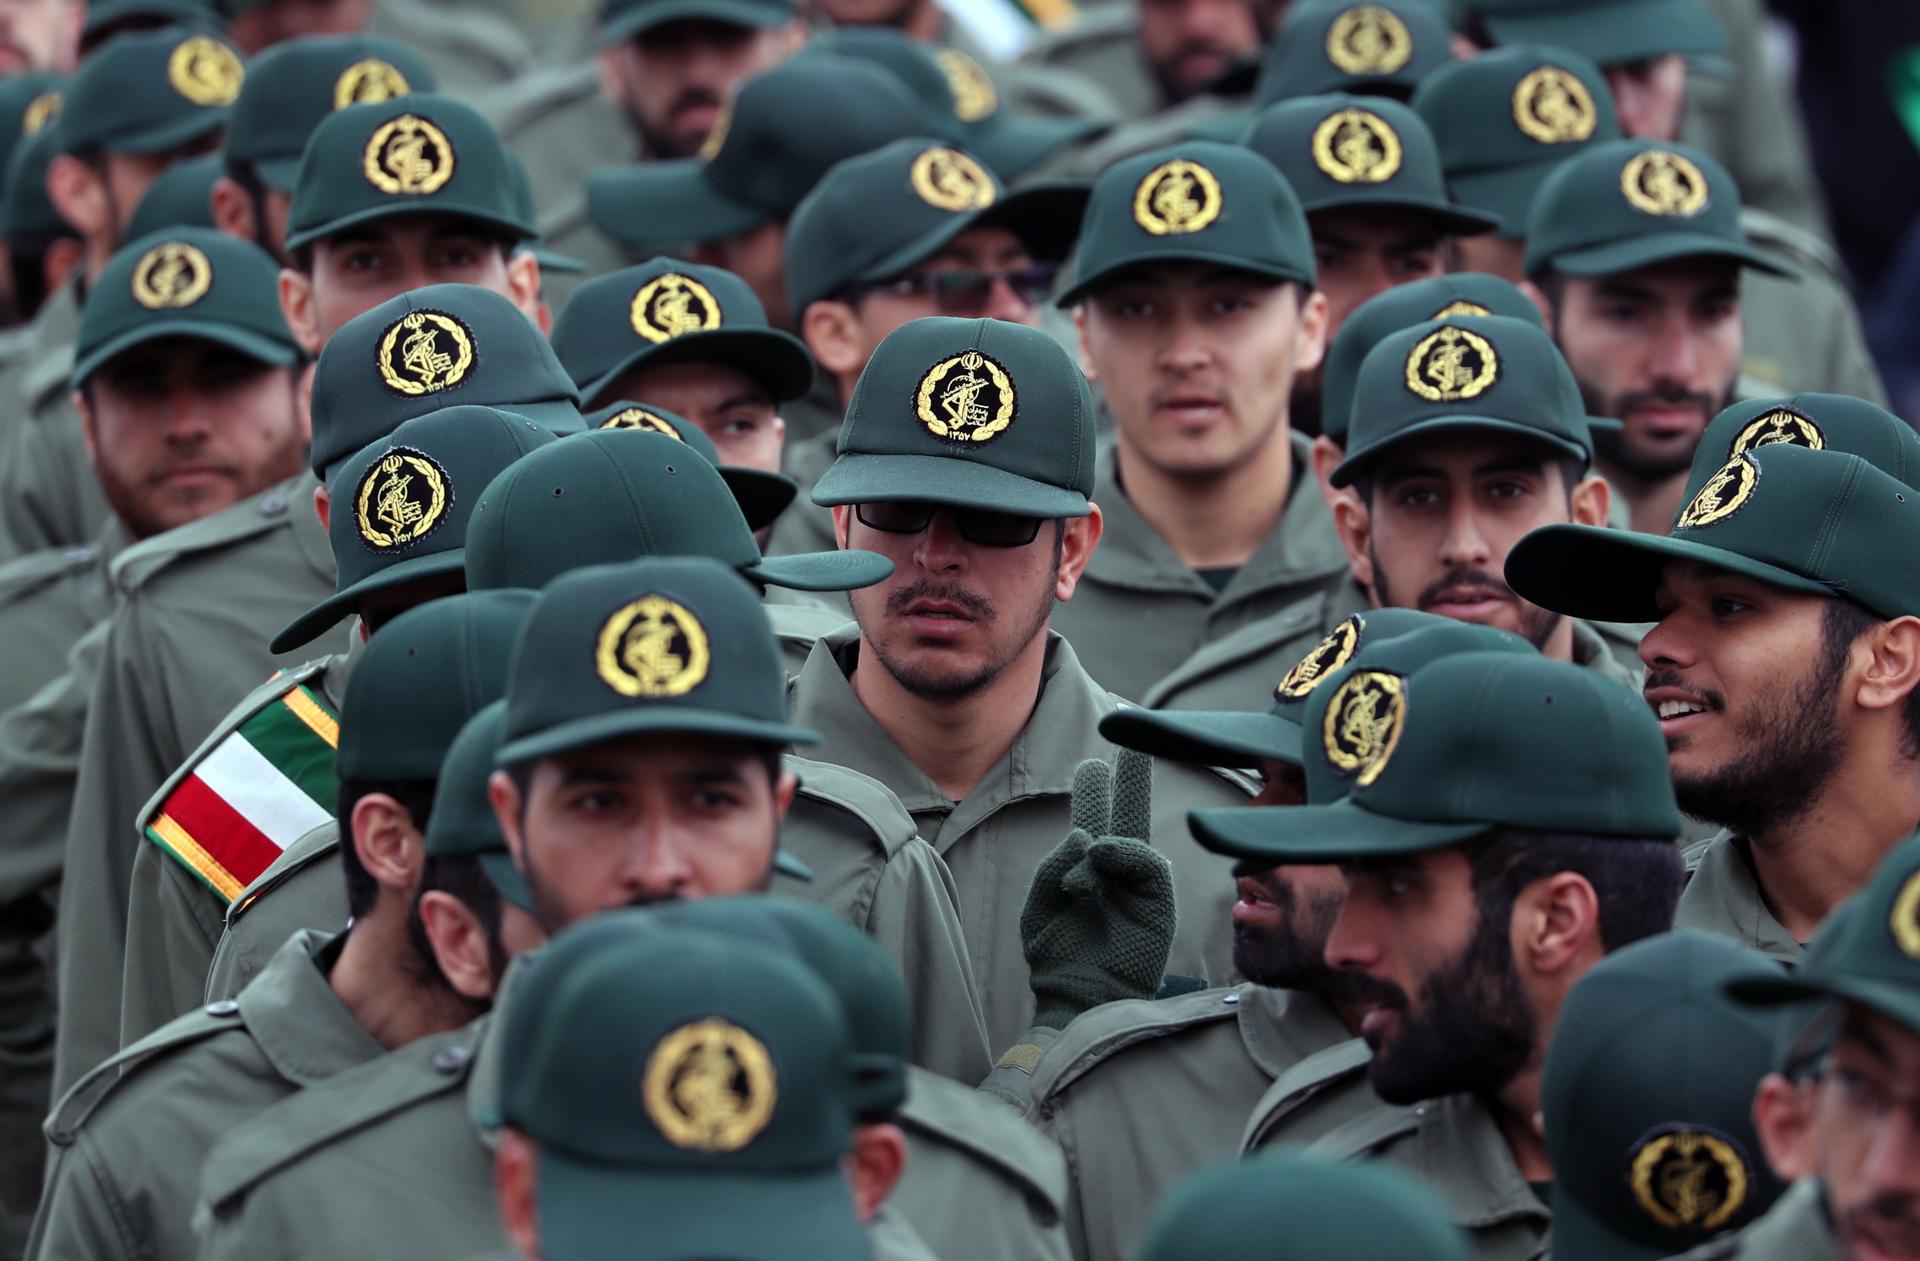 Imagen de archivo de miembros de la Guardia Revolucionaria iraní. EFE/ Abedin Taherkenareh